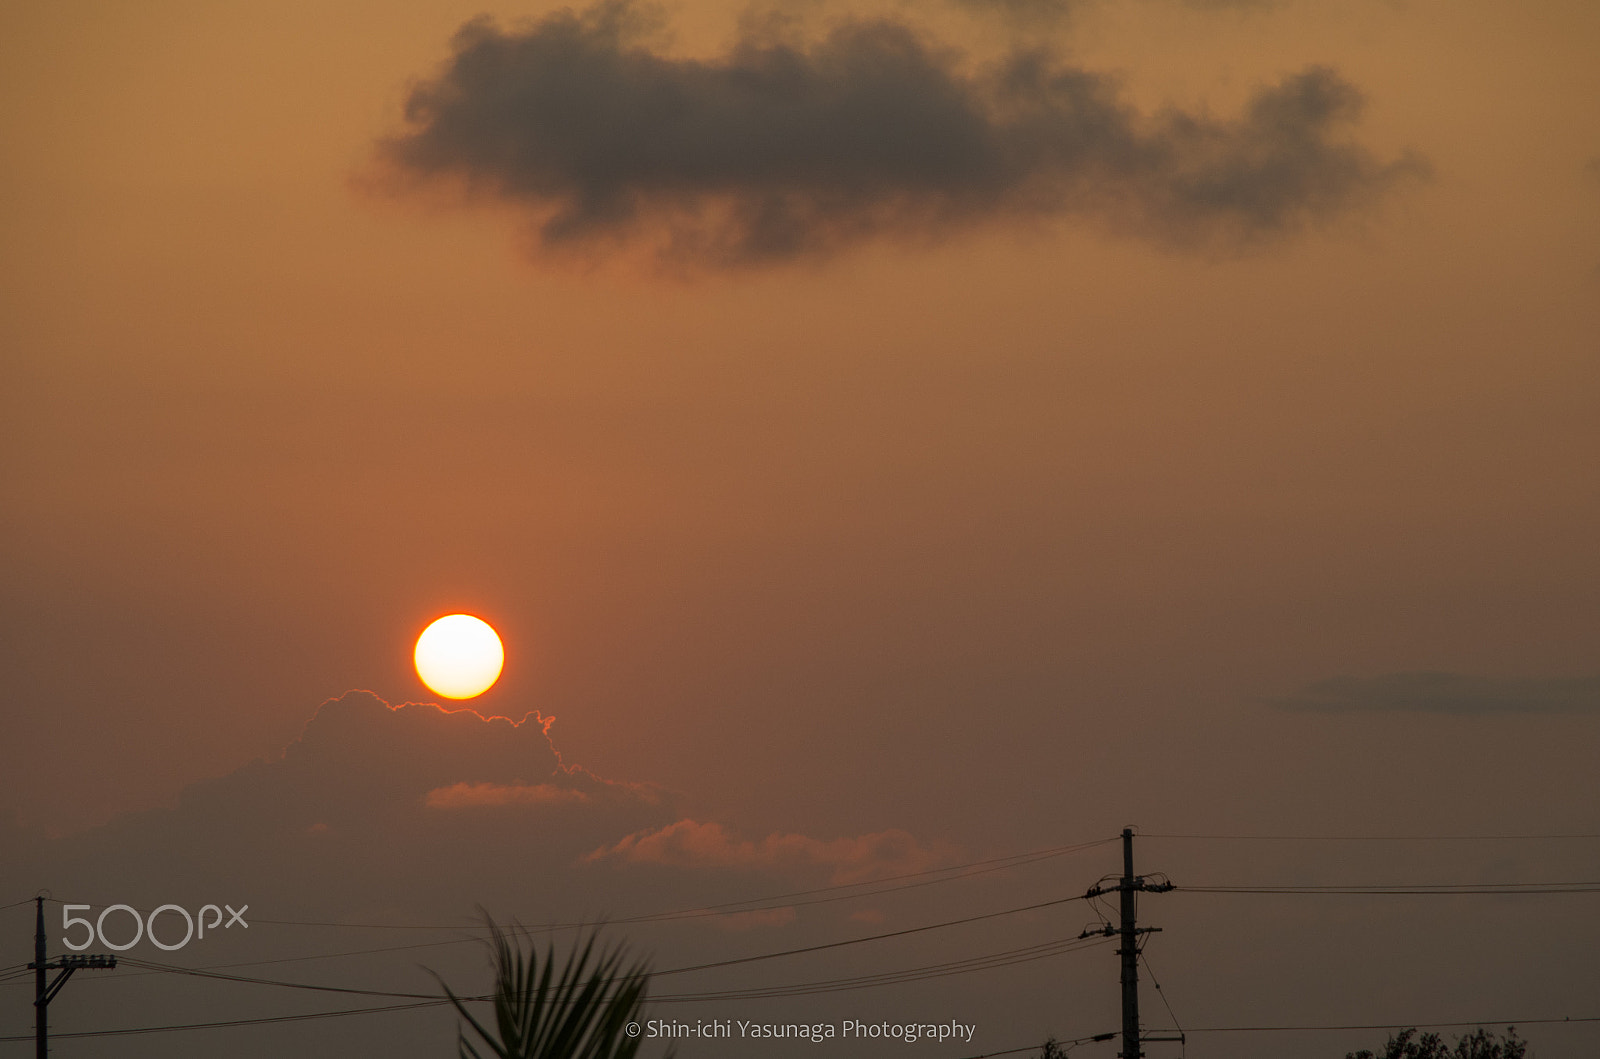 Pentax K-30 sample photo. Sunrise from kohama island okinawa,japan. photography